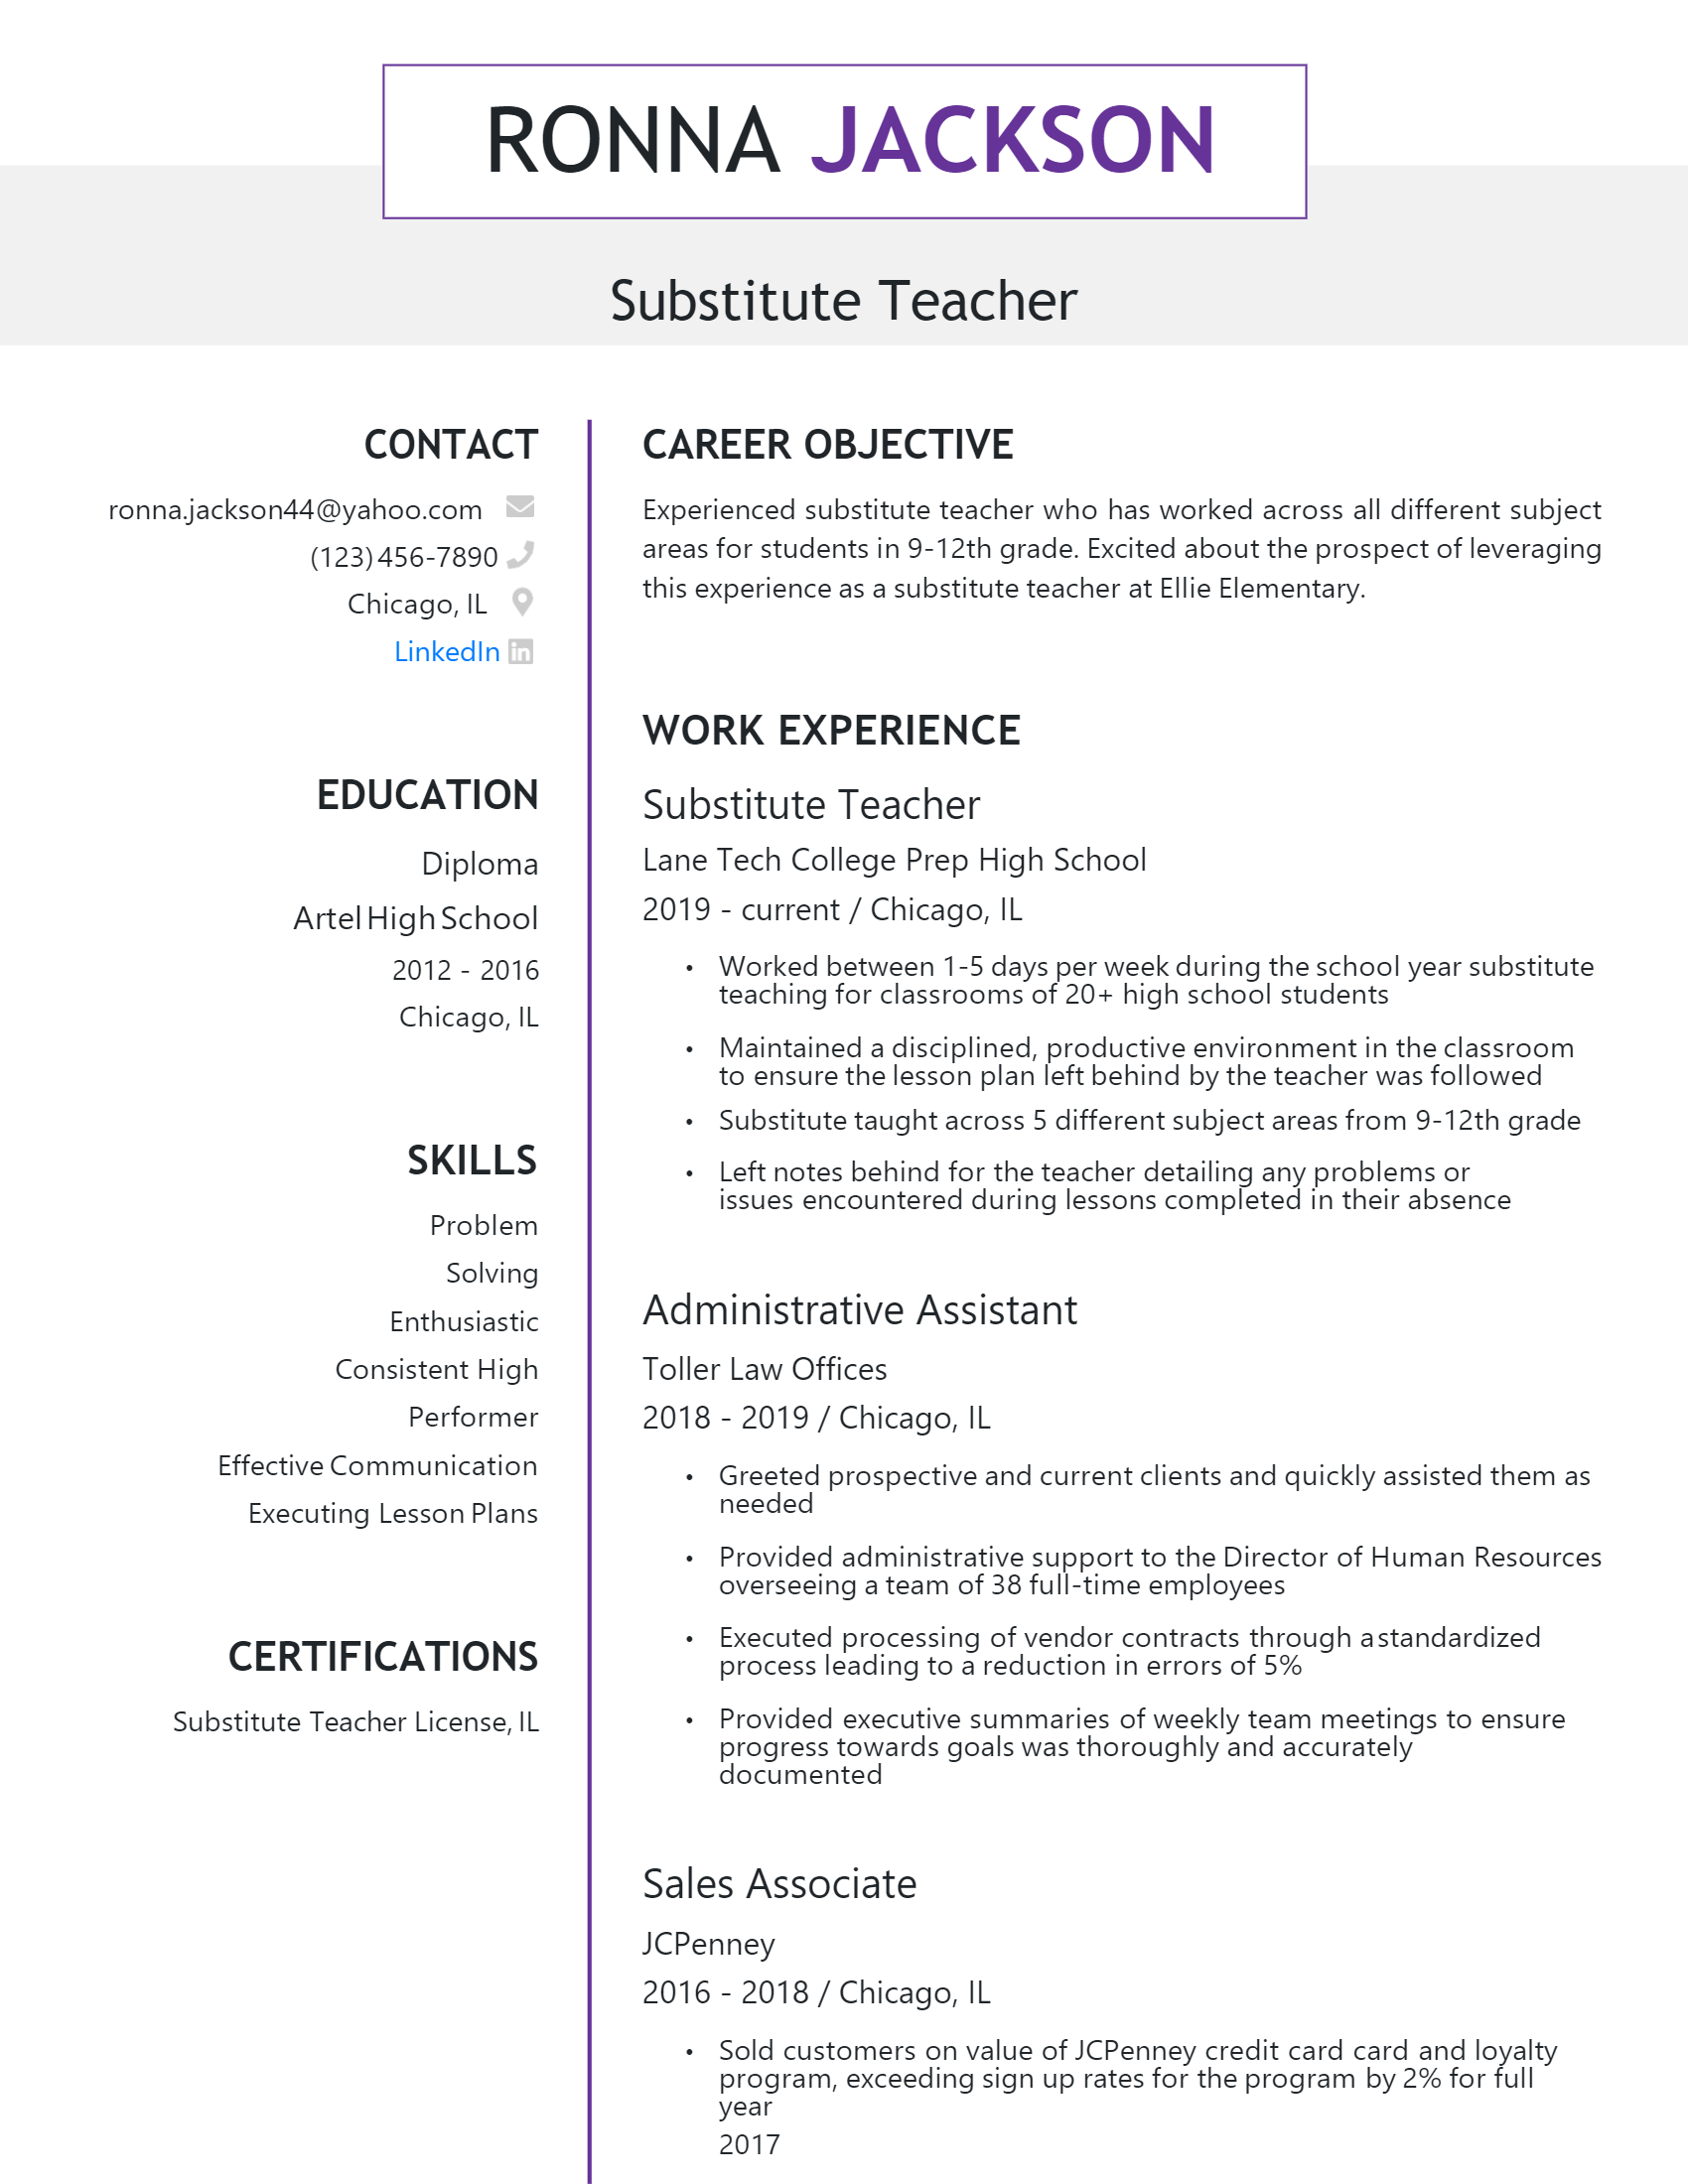 job description for substitute teacher on resume